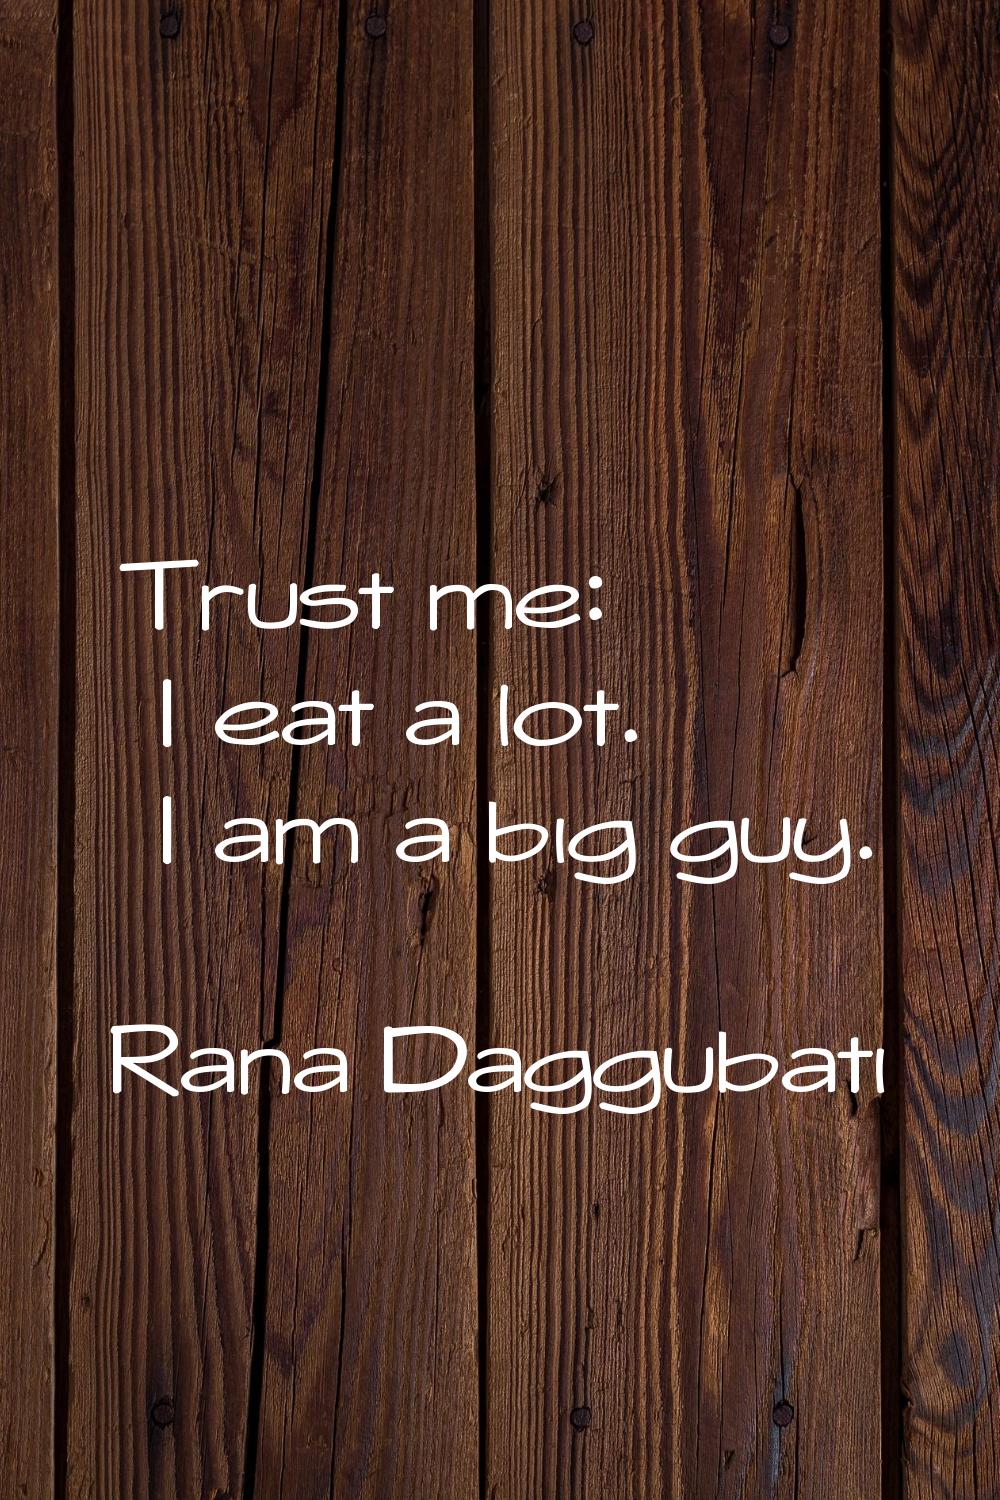 Trust me: I eat a lot. I am a big guy.